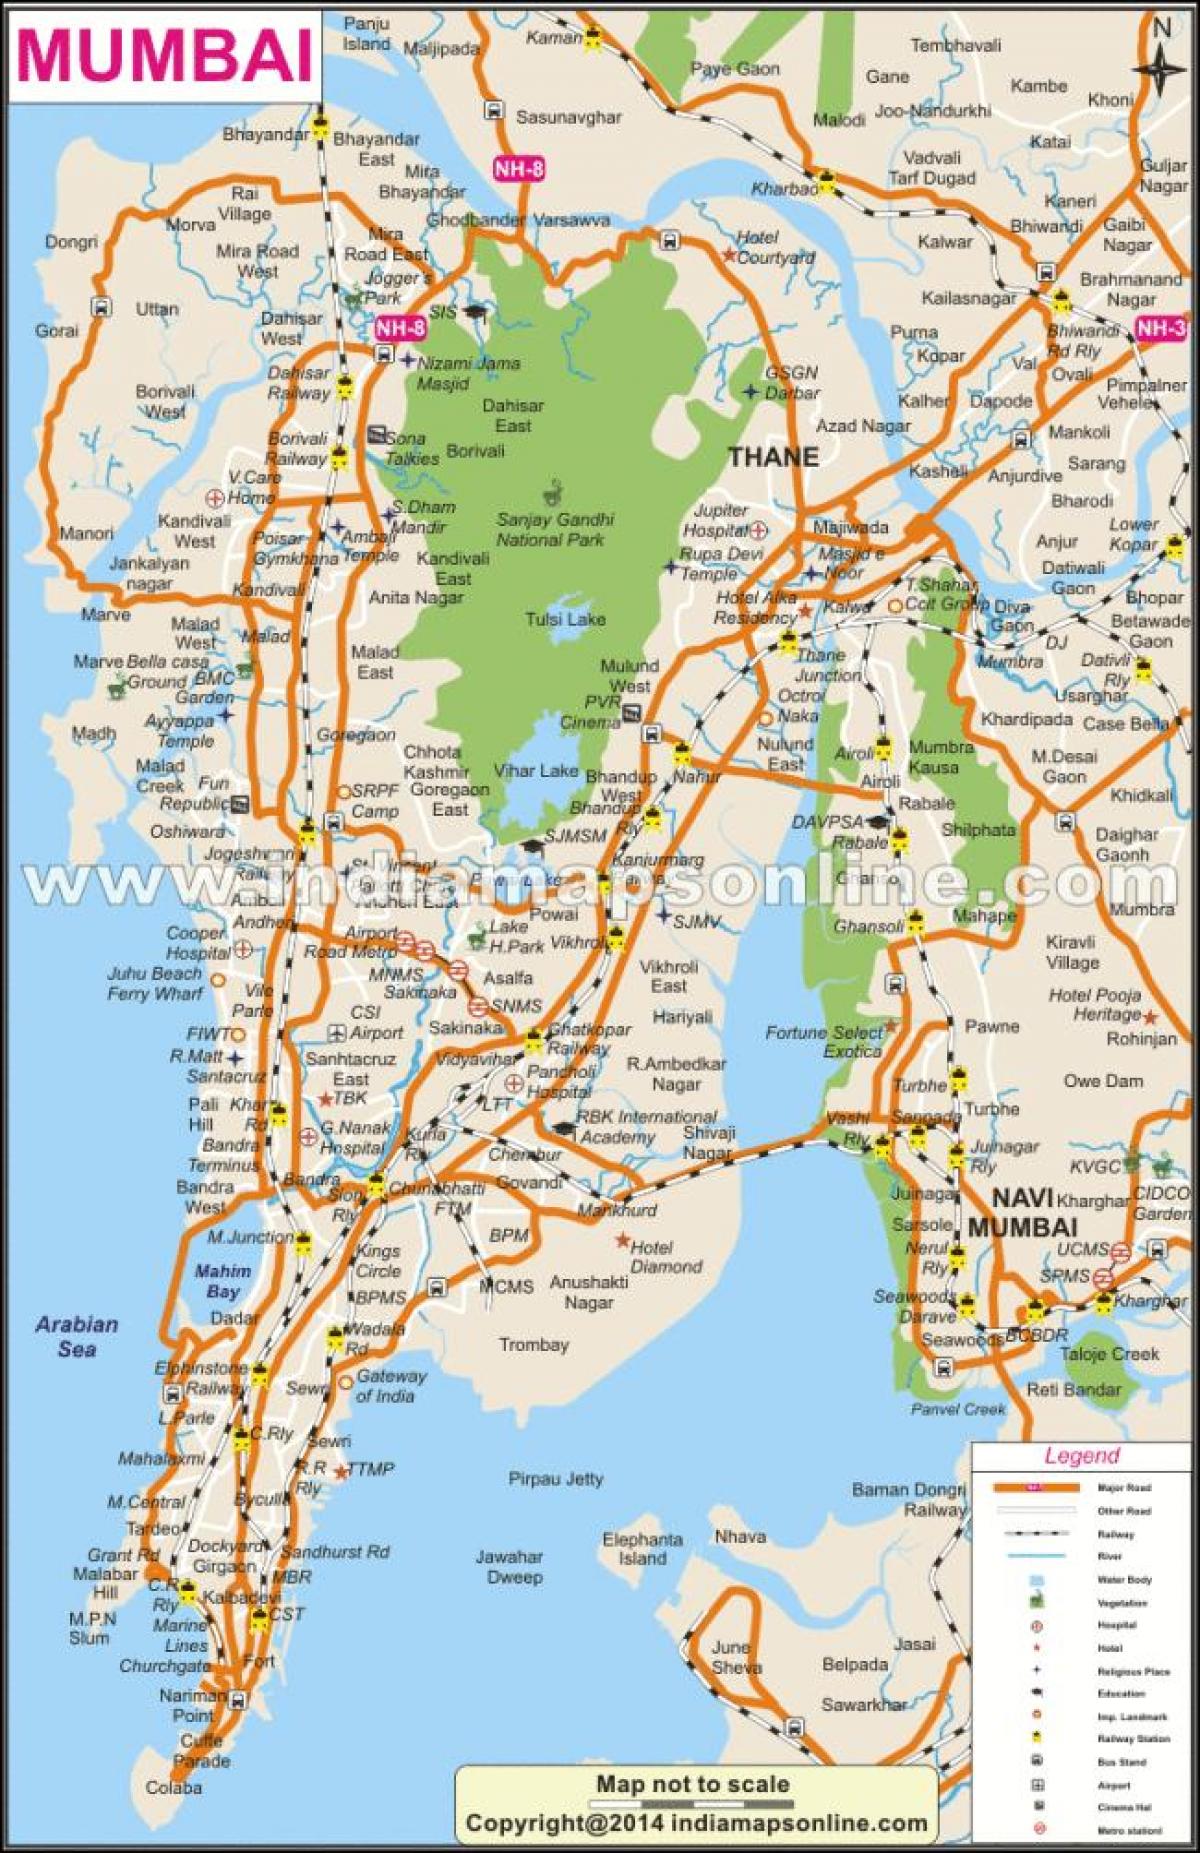 خريطة مومباي المحلي